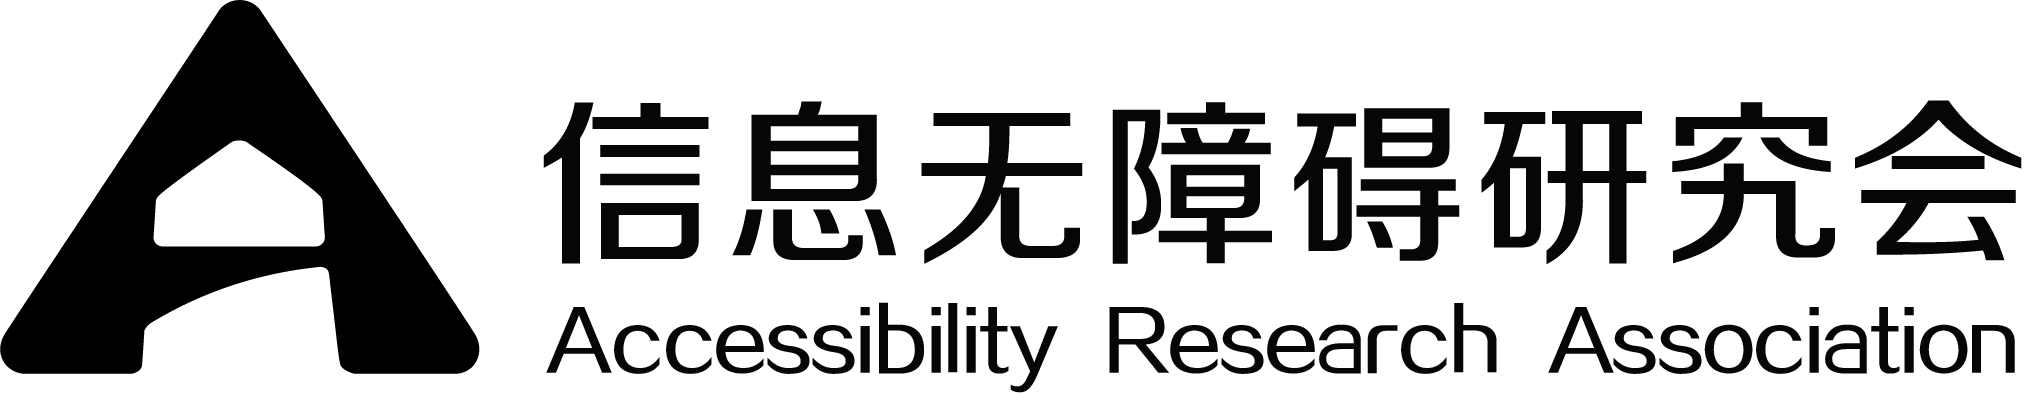 深圳市信息無障礙研究會-2018中國國際福祉博覽會暨中國國際康復博覽會